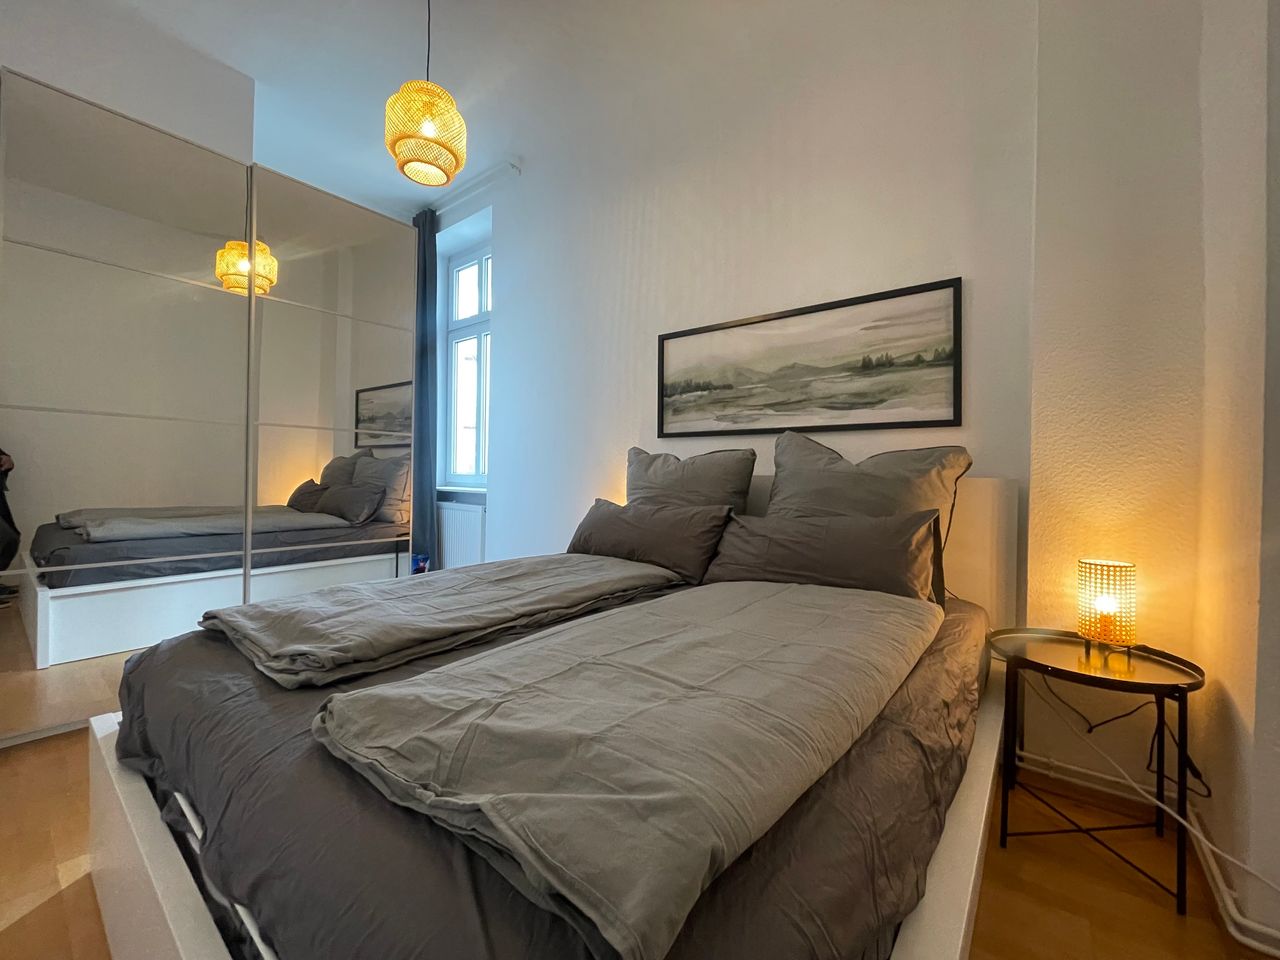 Lovely 2-rooms-suite in Friedrichshain, riht next to Warschauer Str.